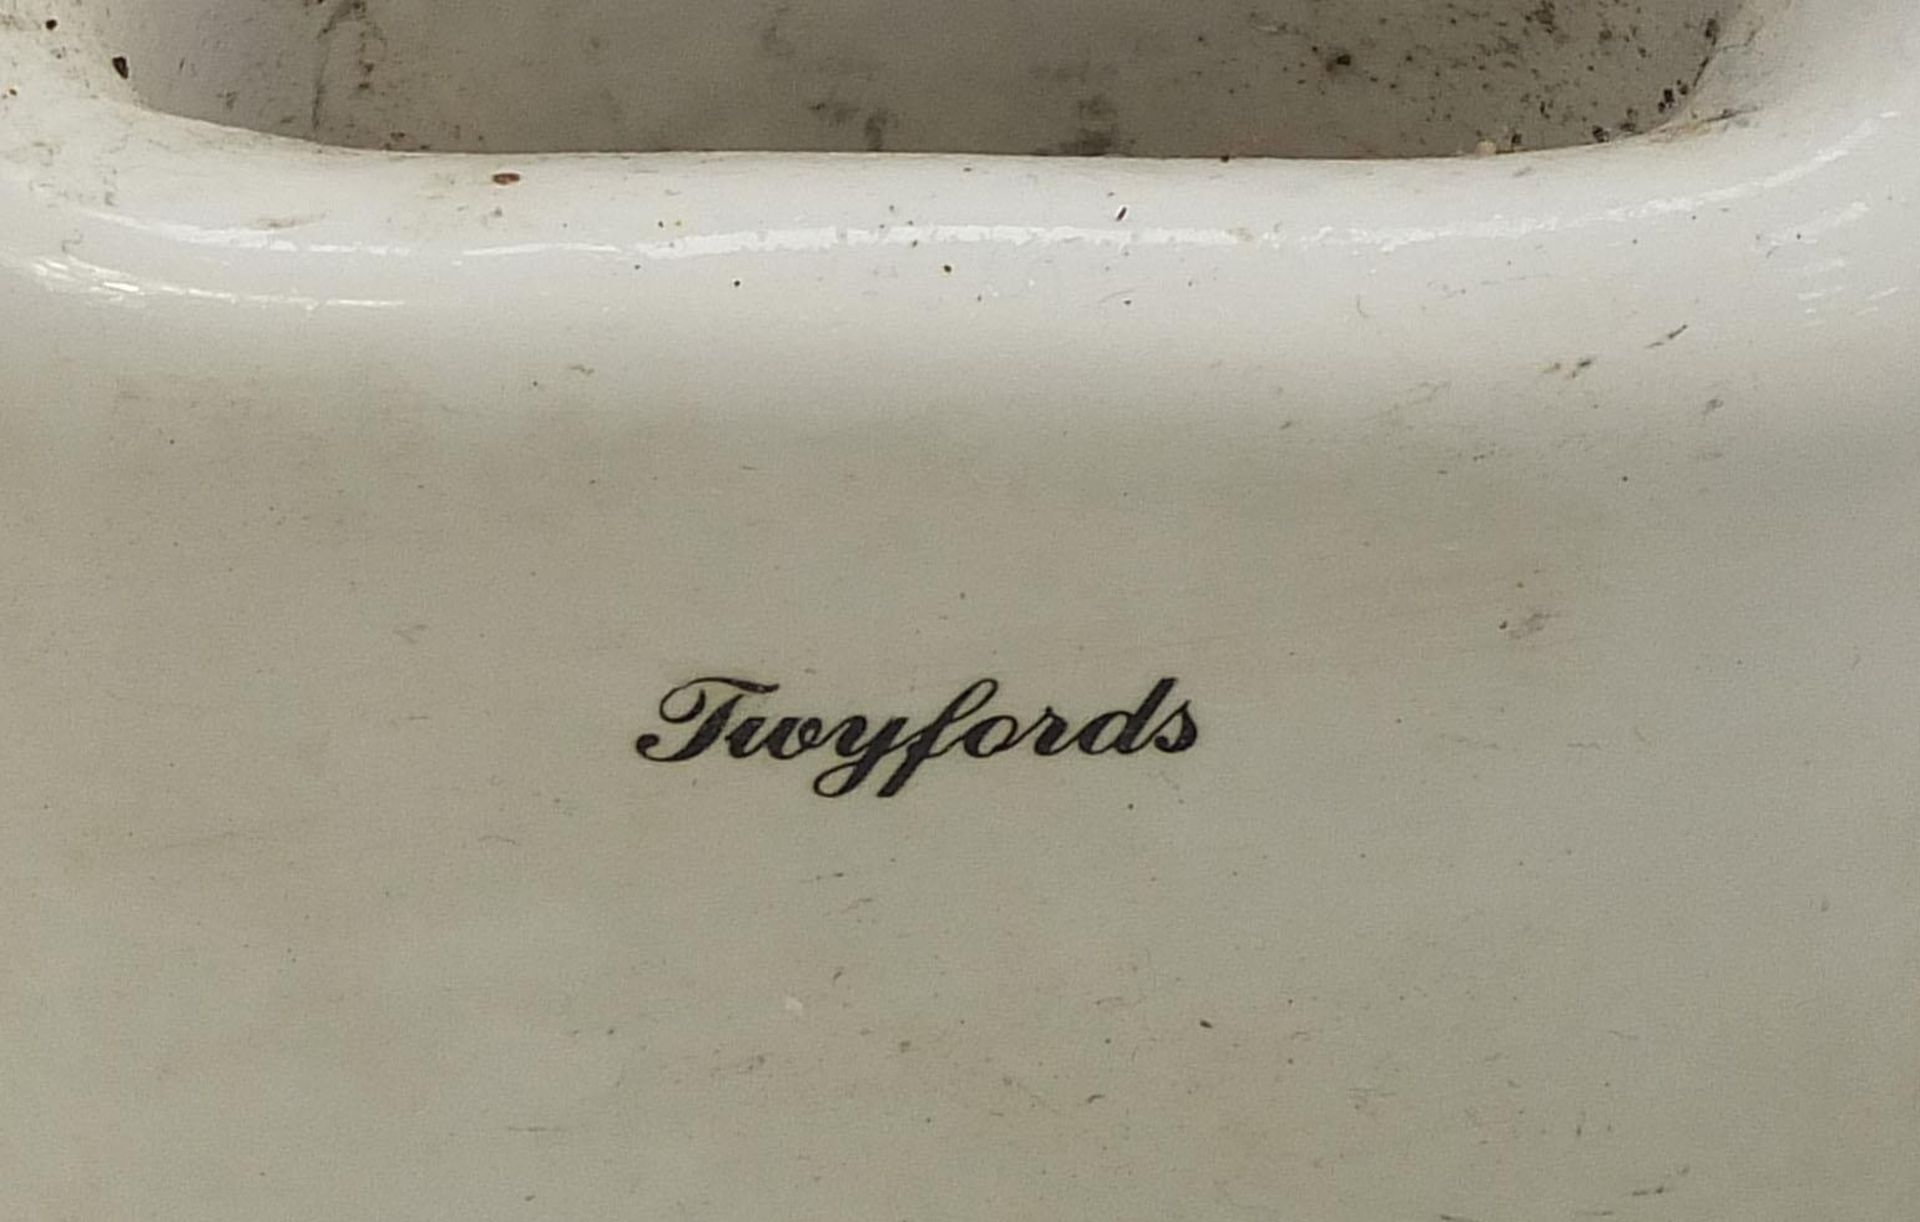 Twyfords Belfast sink, 21cm high x 46.5cm W x 39.5cm D - Image 3 of 5